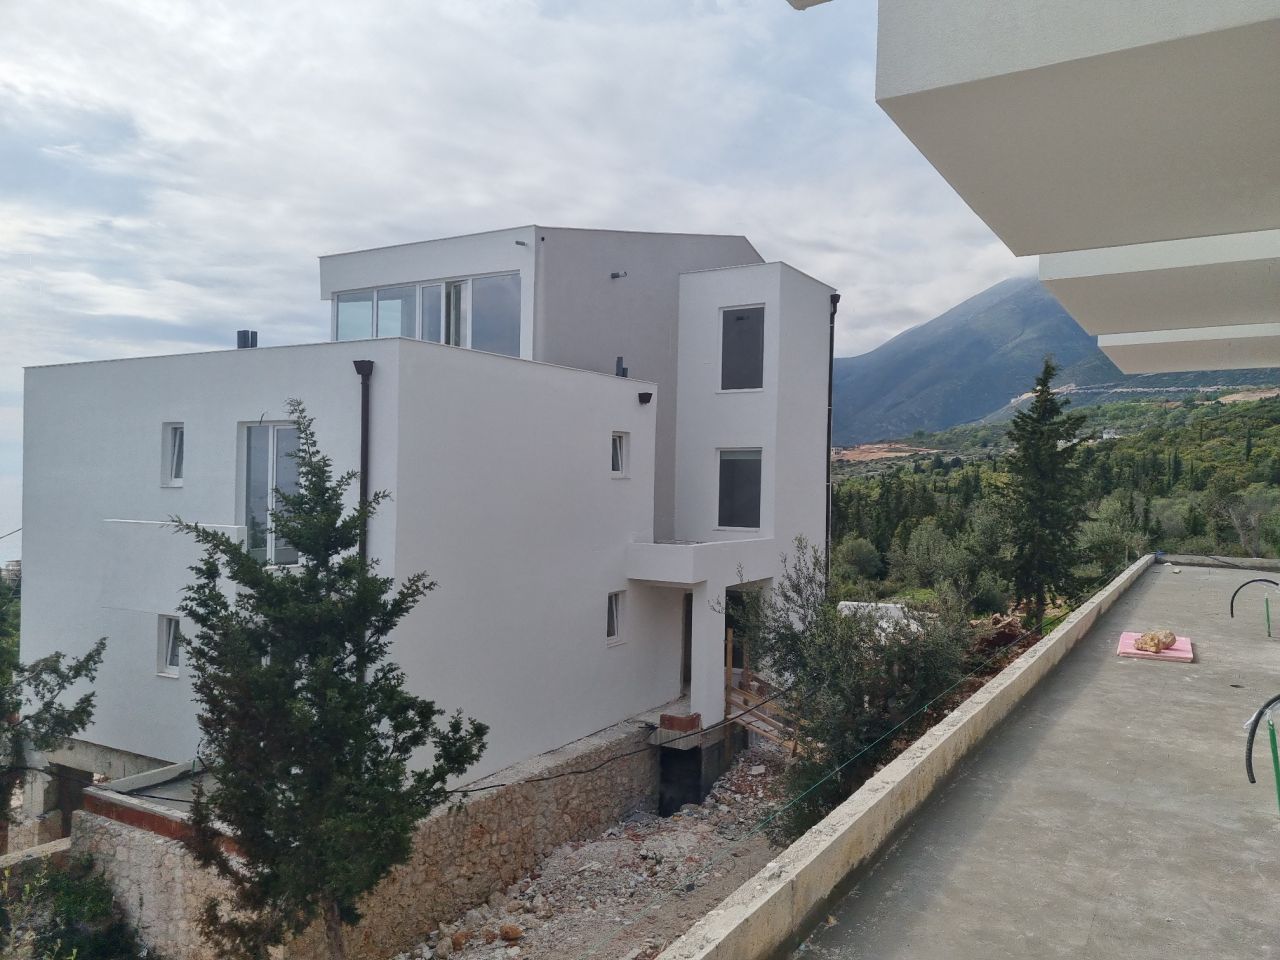 Eladó lakások Dhermiben, Albániában